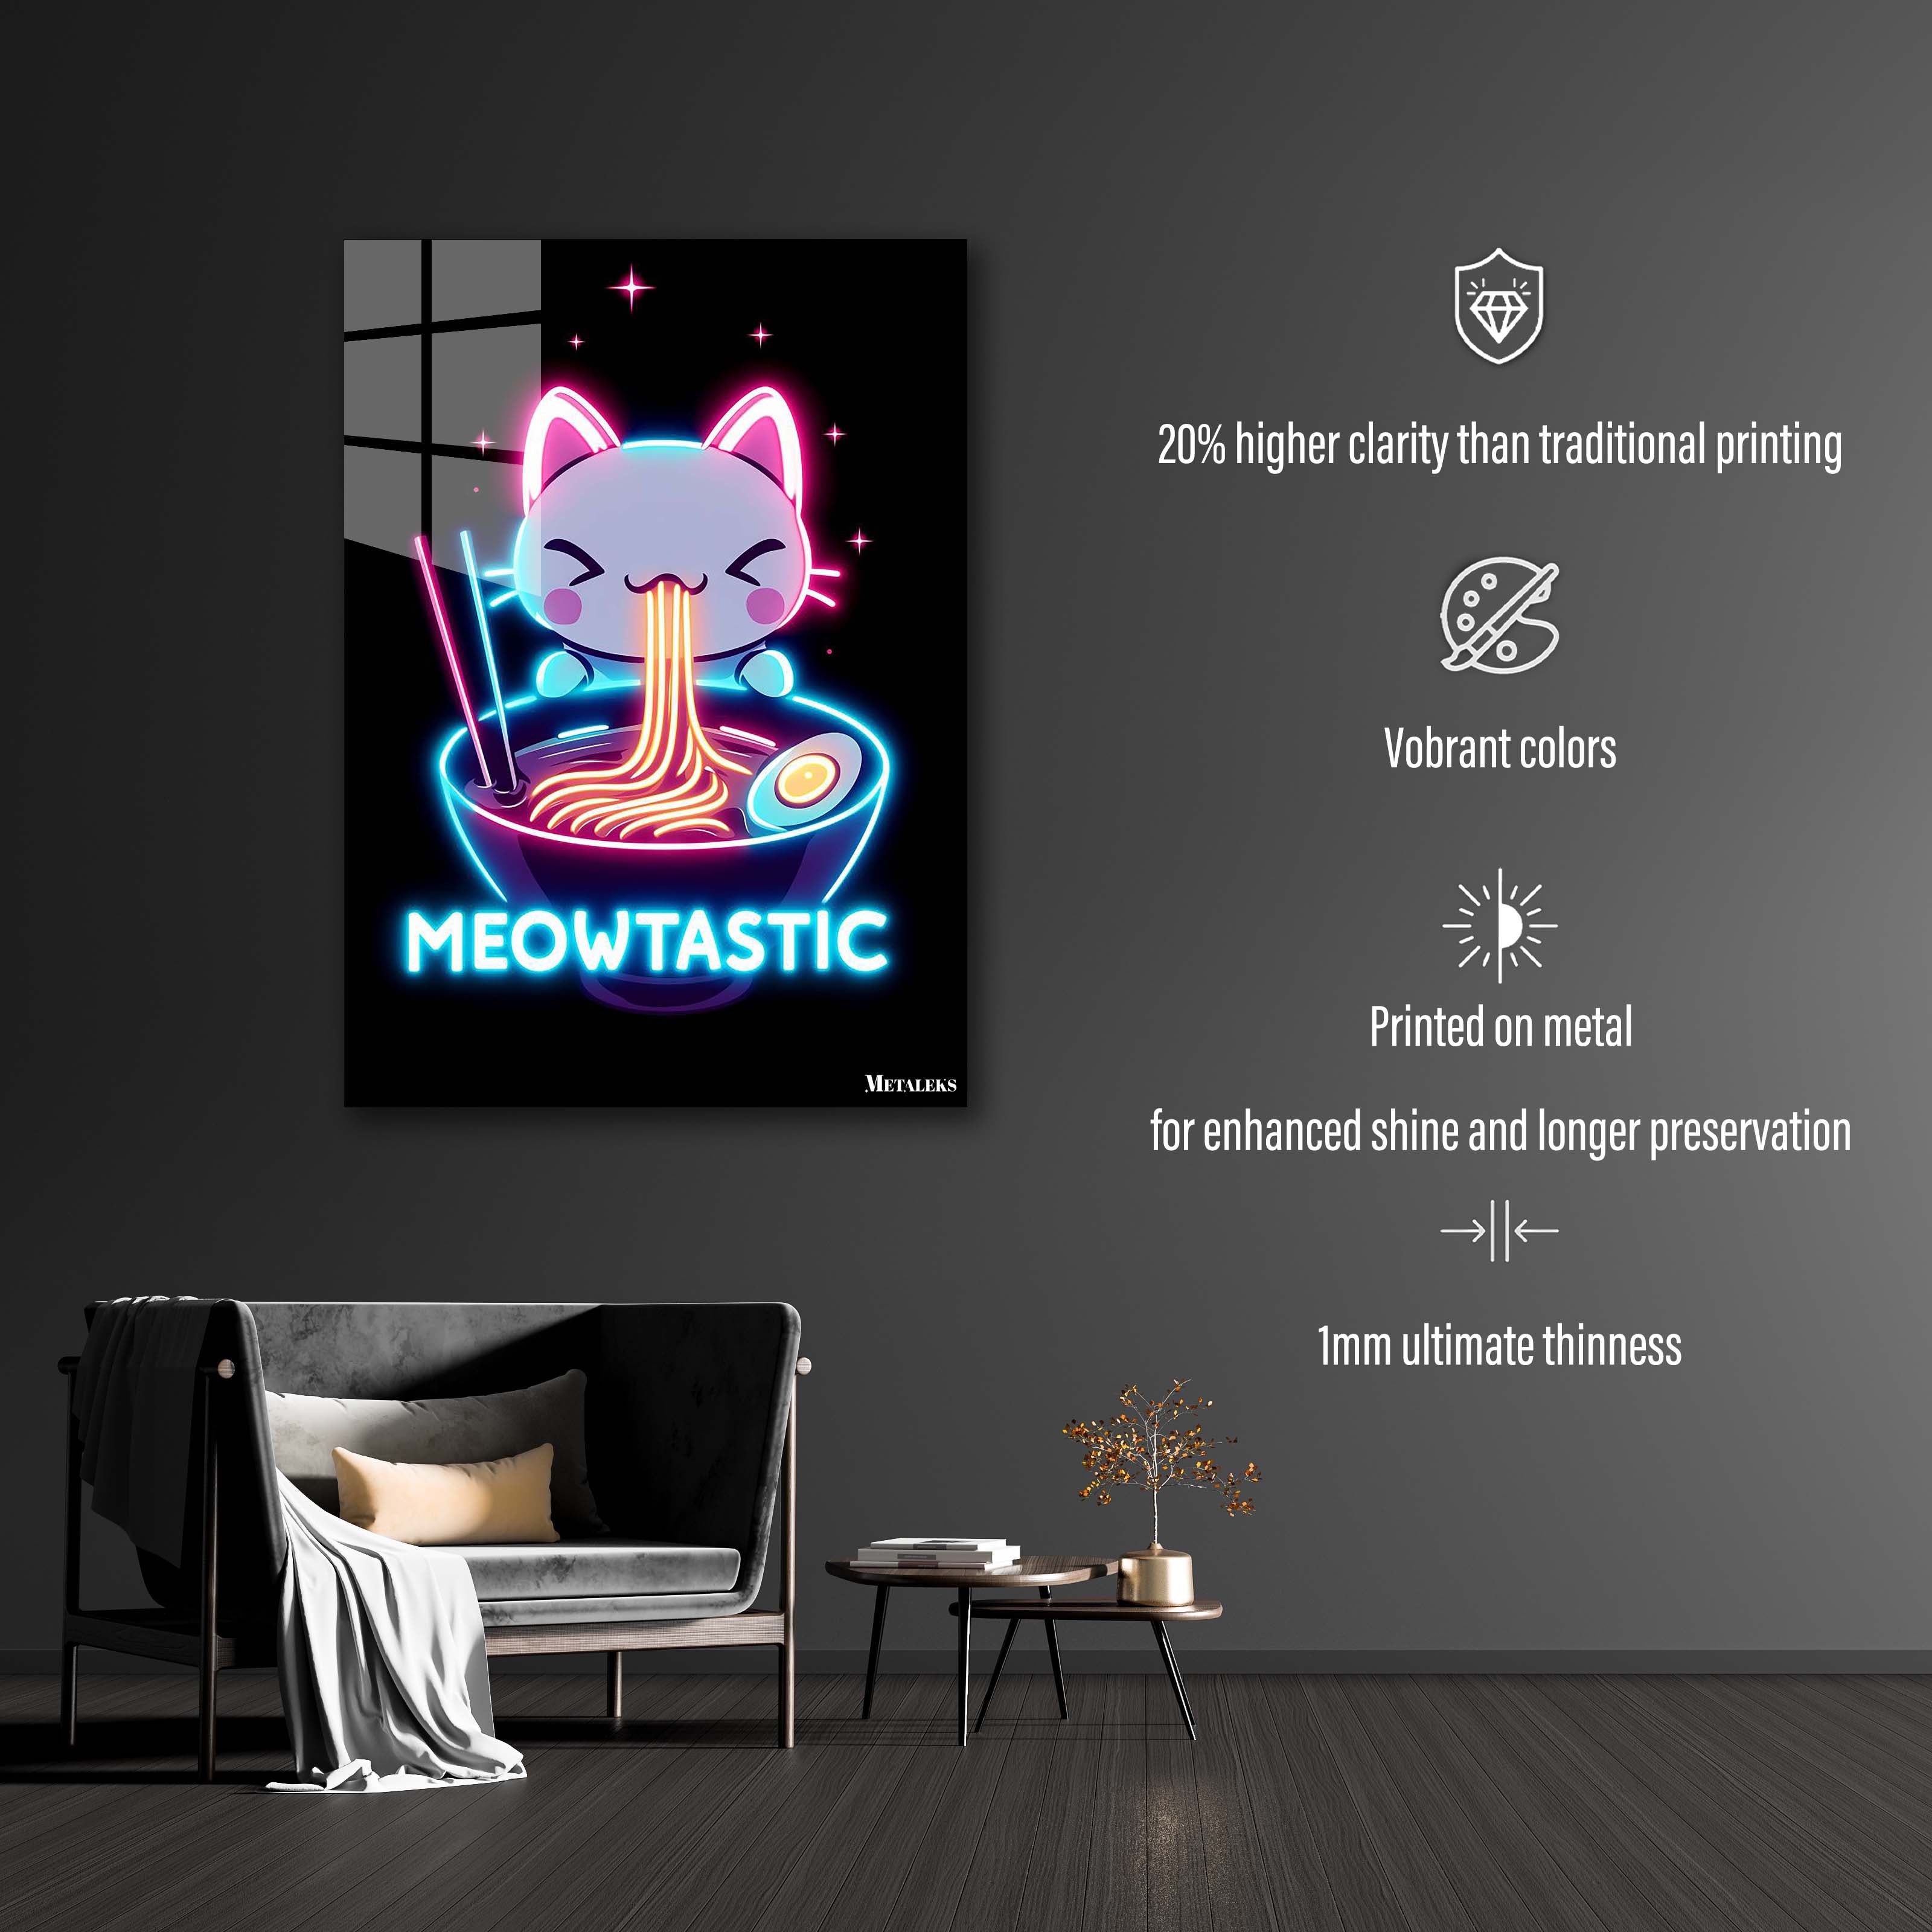 Meowtastic-designed by @Vizio